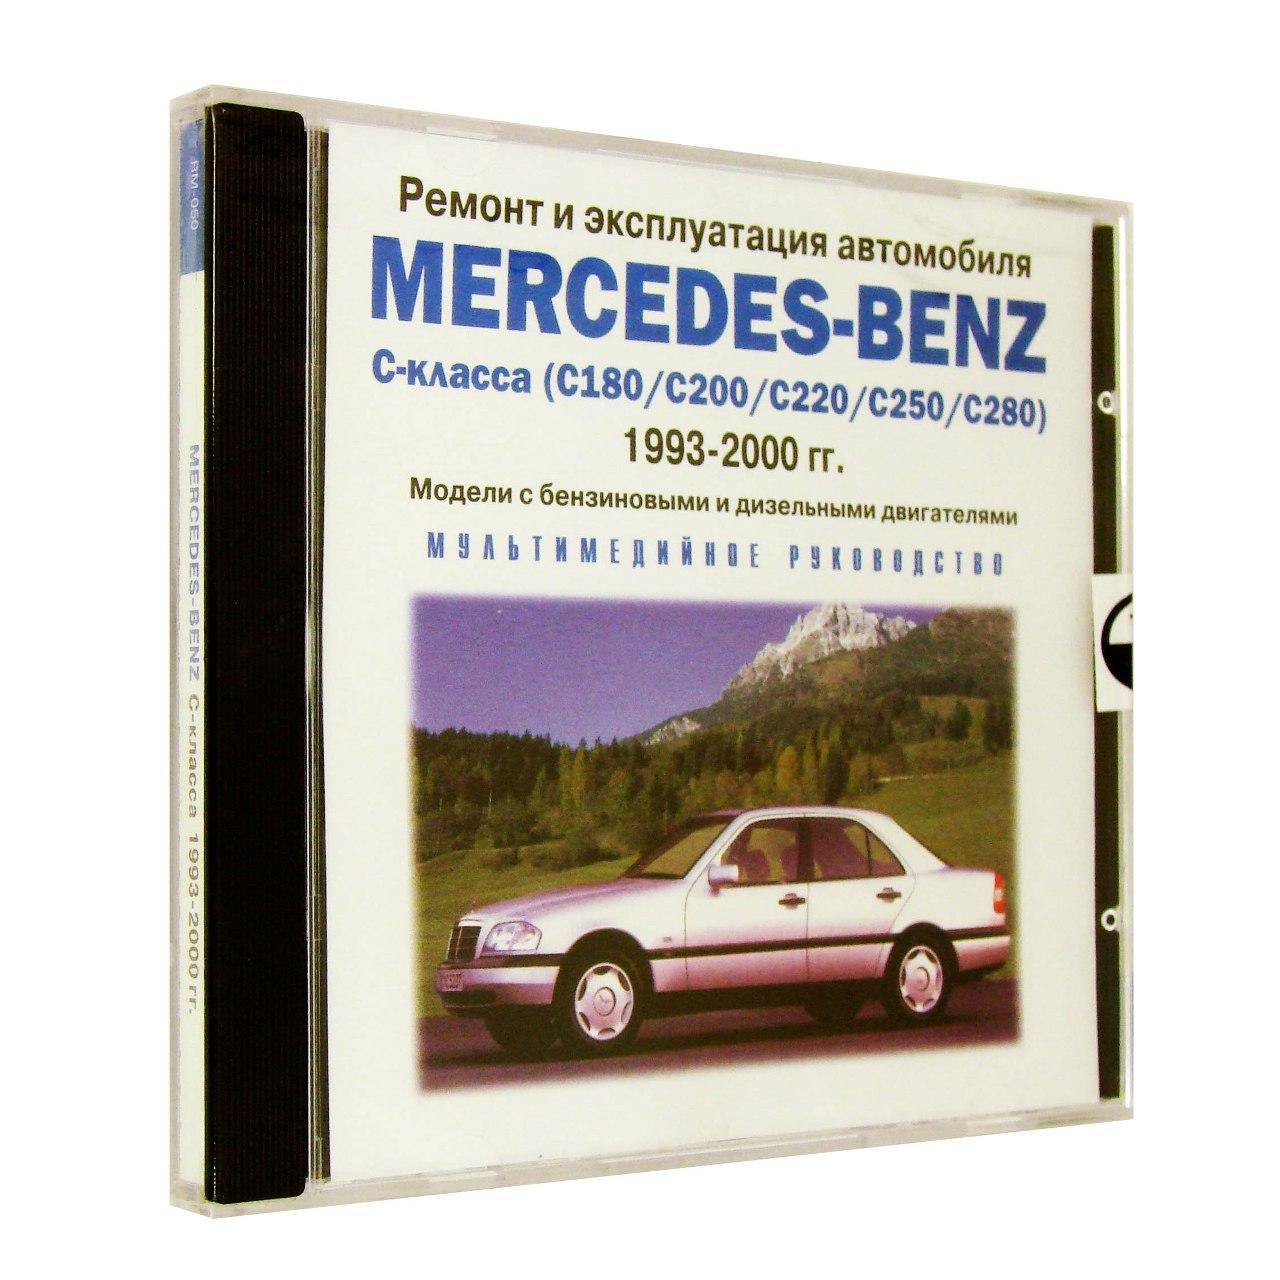 Компьютерный компакт-диск Mercedes-Benz С-класса 1993-2000г ремонт и эксплуатация автомобиля (ПК), фирма RMG Multimedia, 1CD